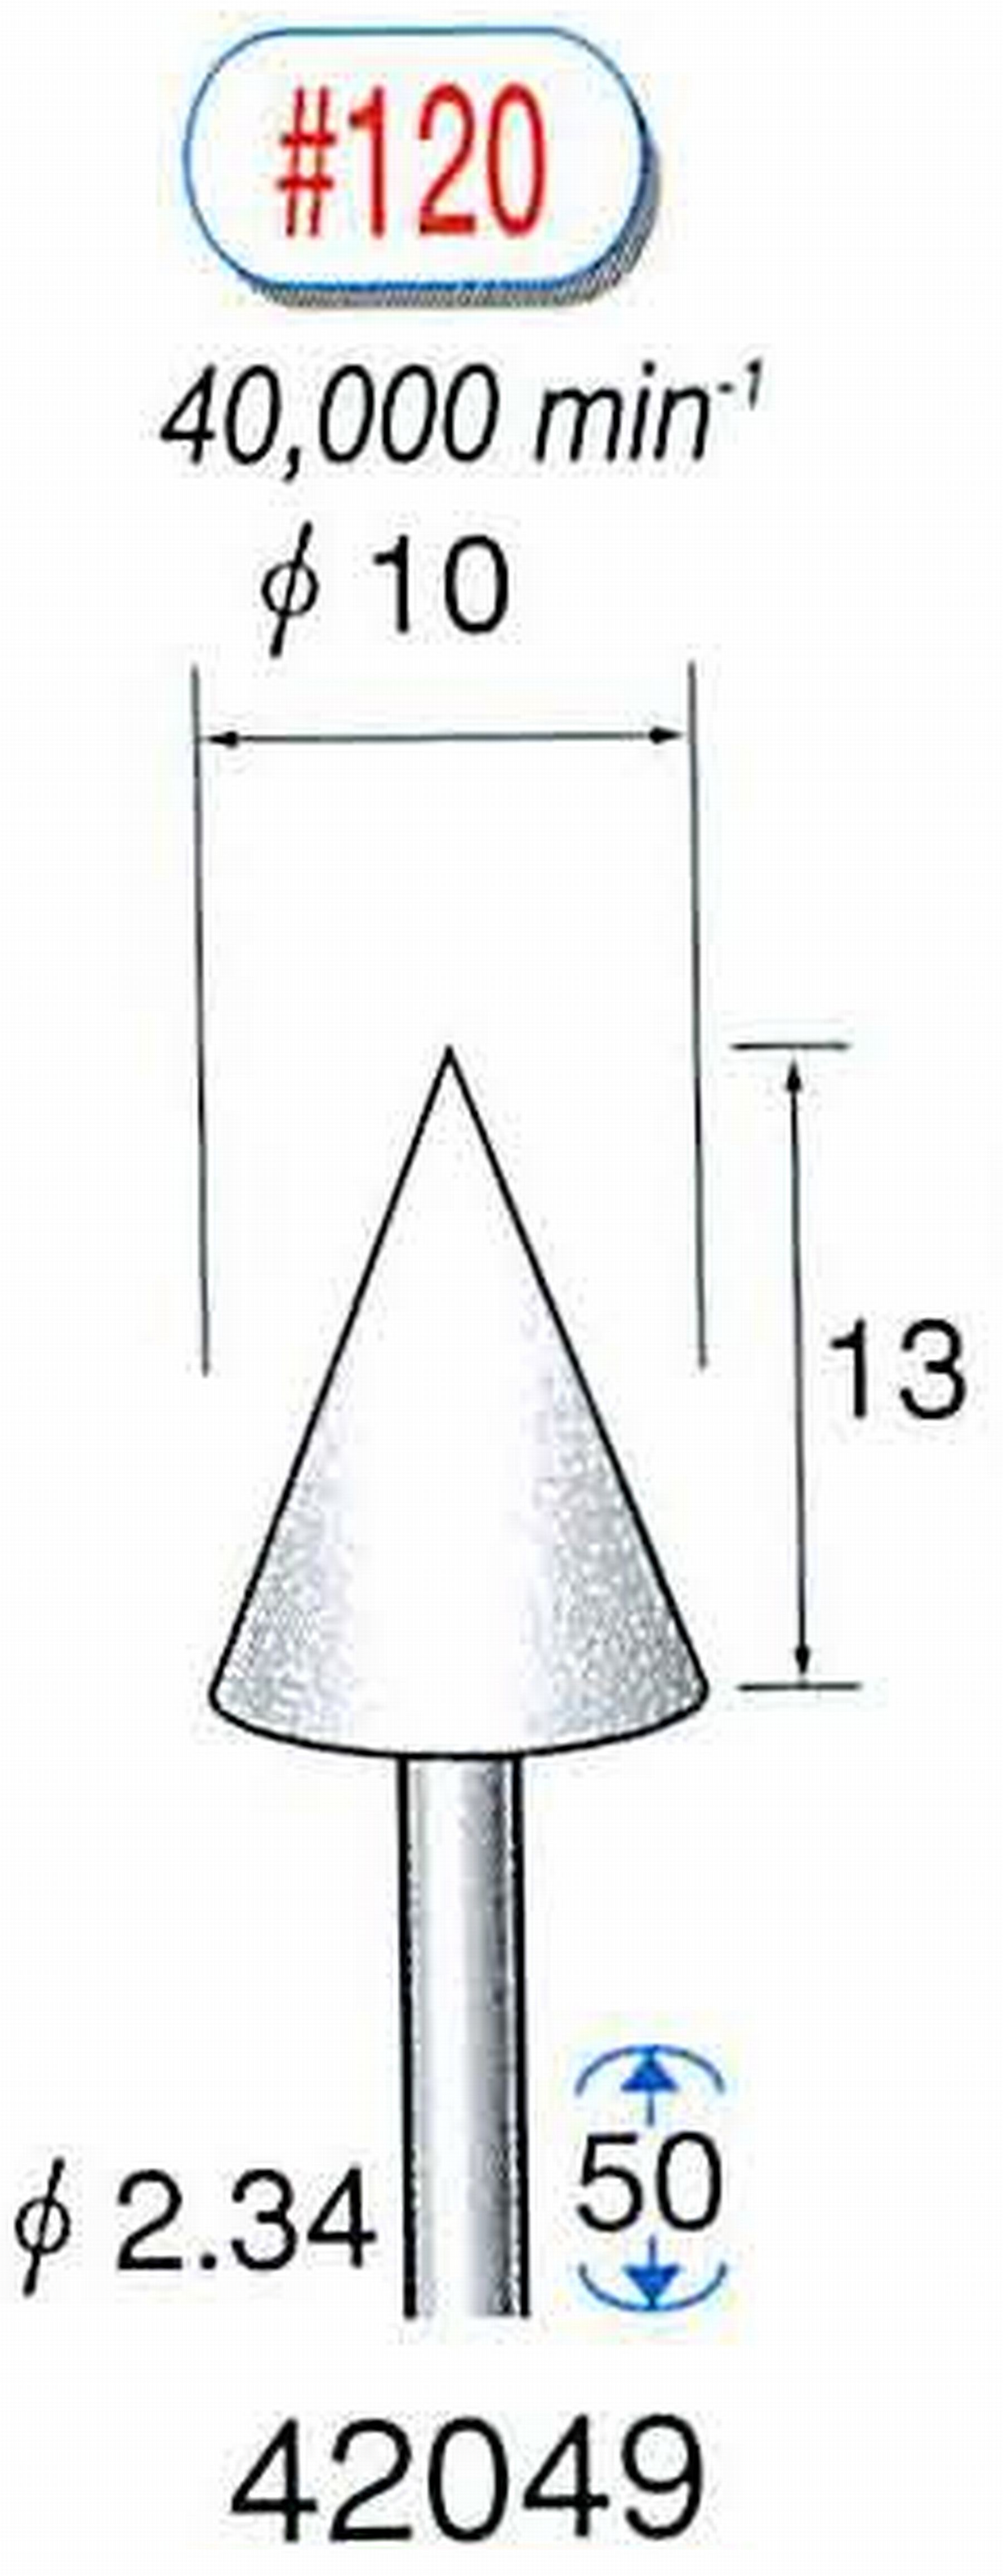 ナカニシ/NAKANISHI 軸付砥石(WA砥粒) 軸径(シャンク) φ2.34mm 42049